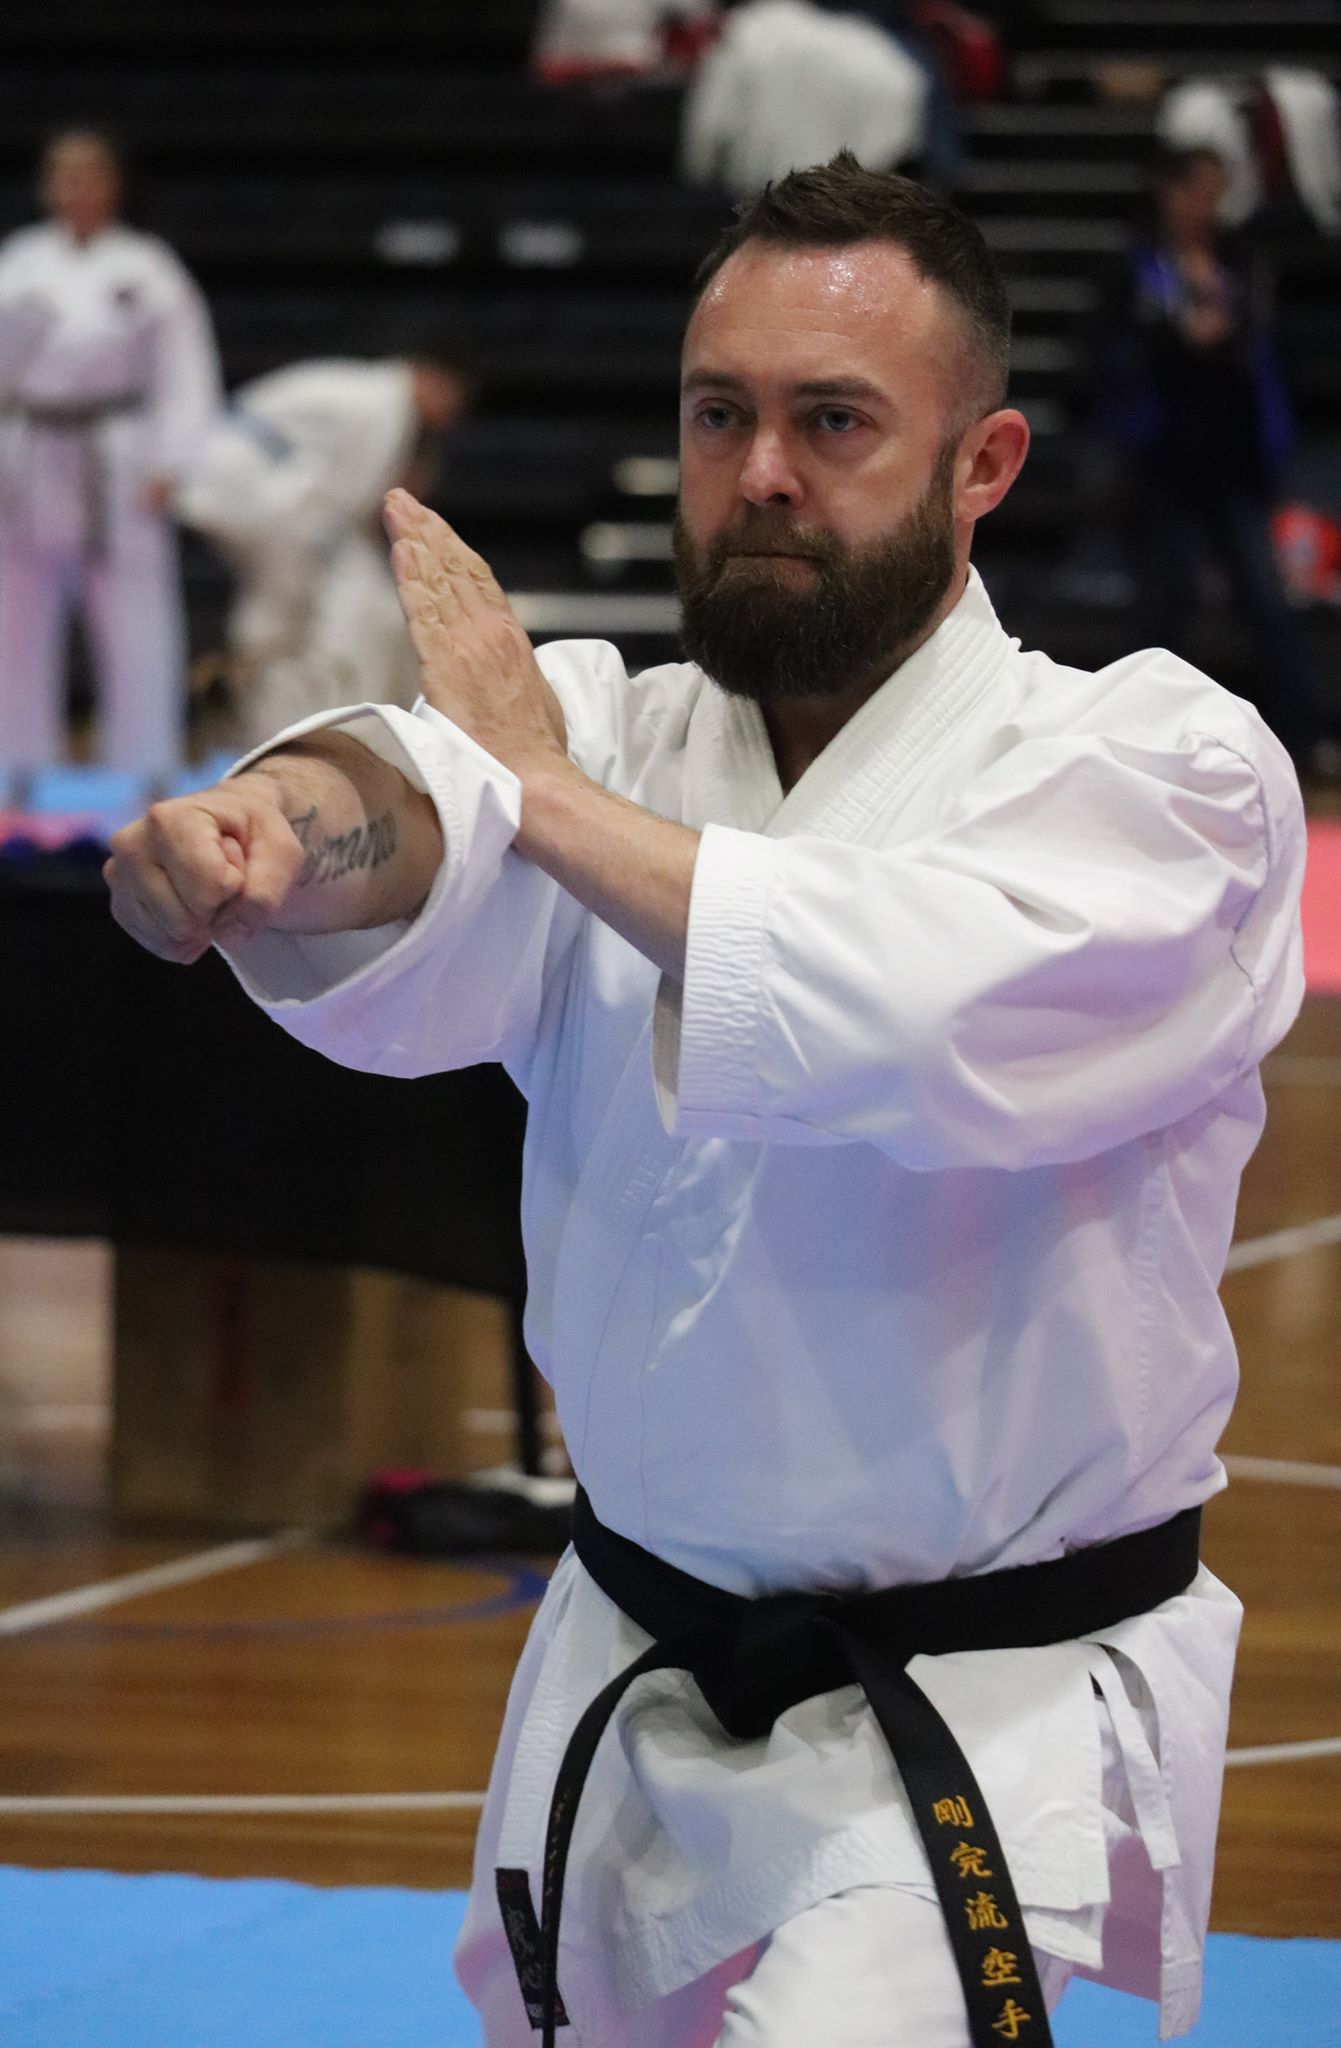 NSW black belt open